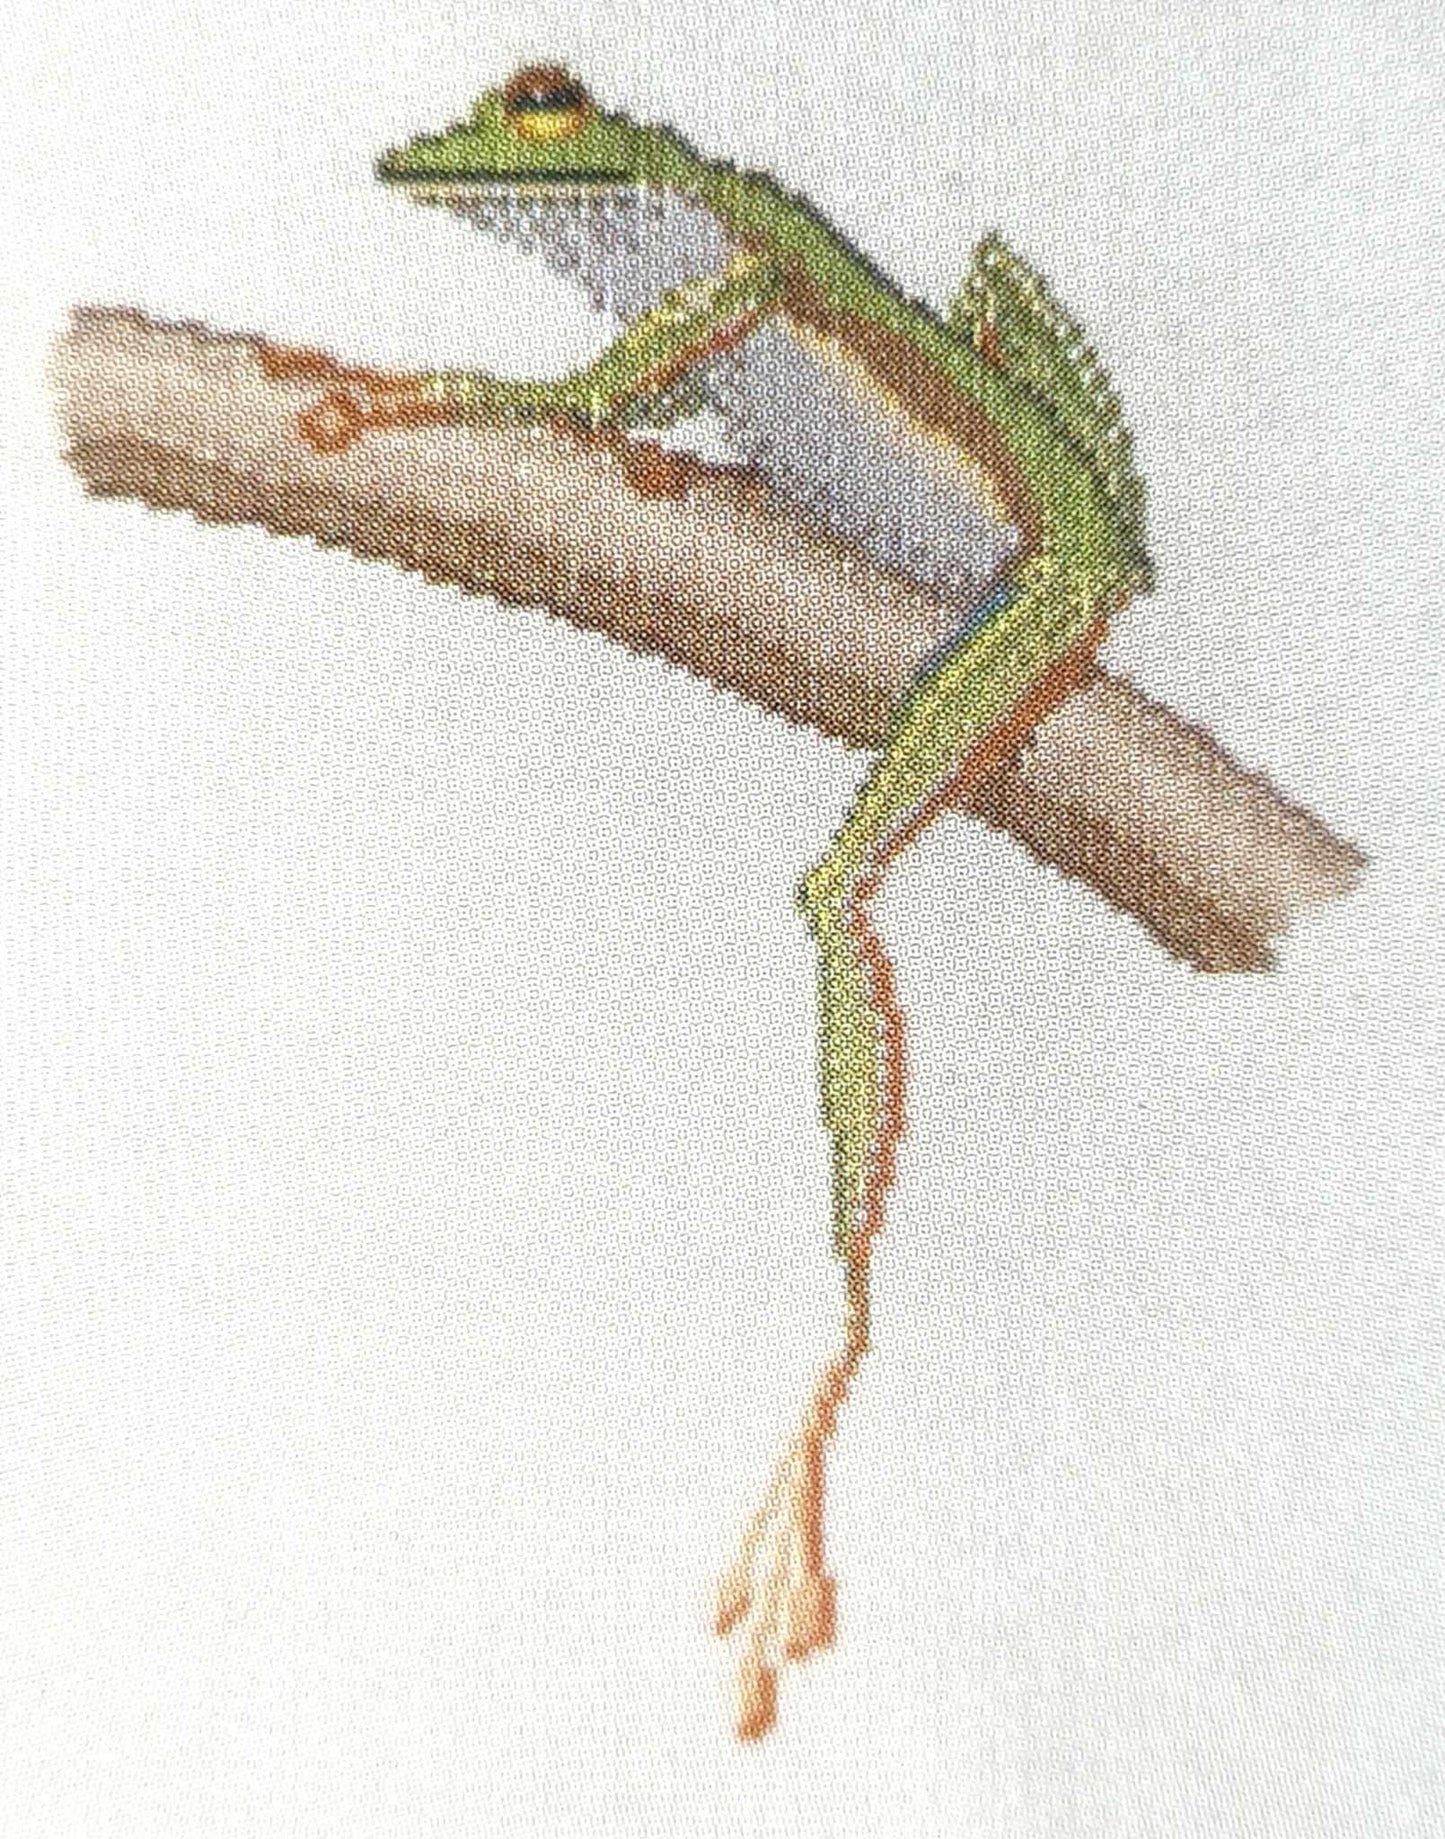 Australian Frogs 03 Cross Stitch Kit